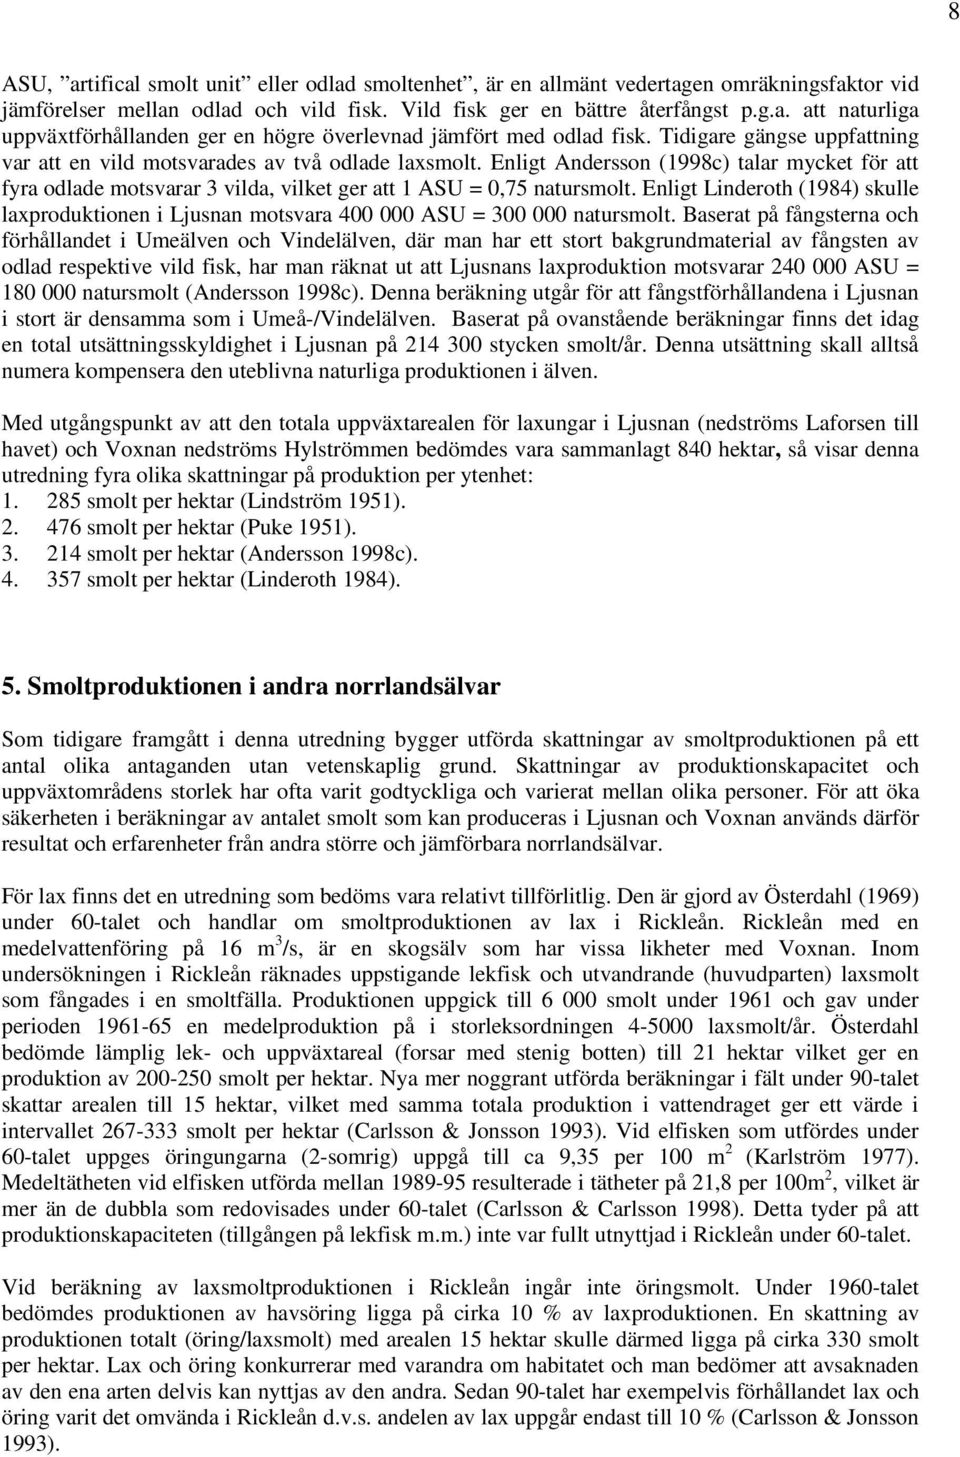 Enligt Linderoth (1984) skulle laxproduktionen i Ljusnan motsvara 400 000 ASU = 300 000 natursmolt.